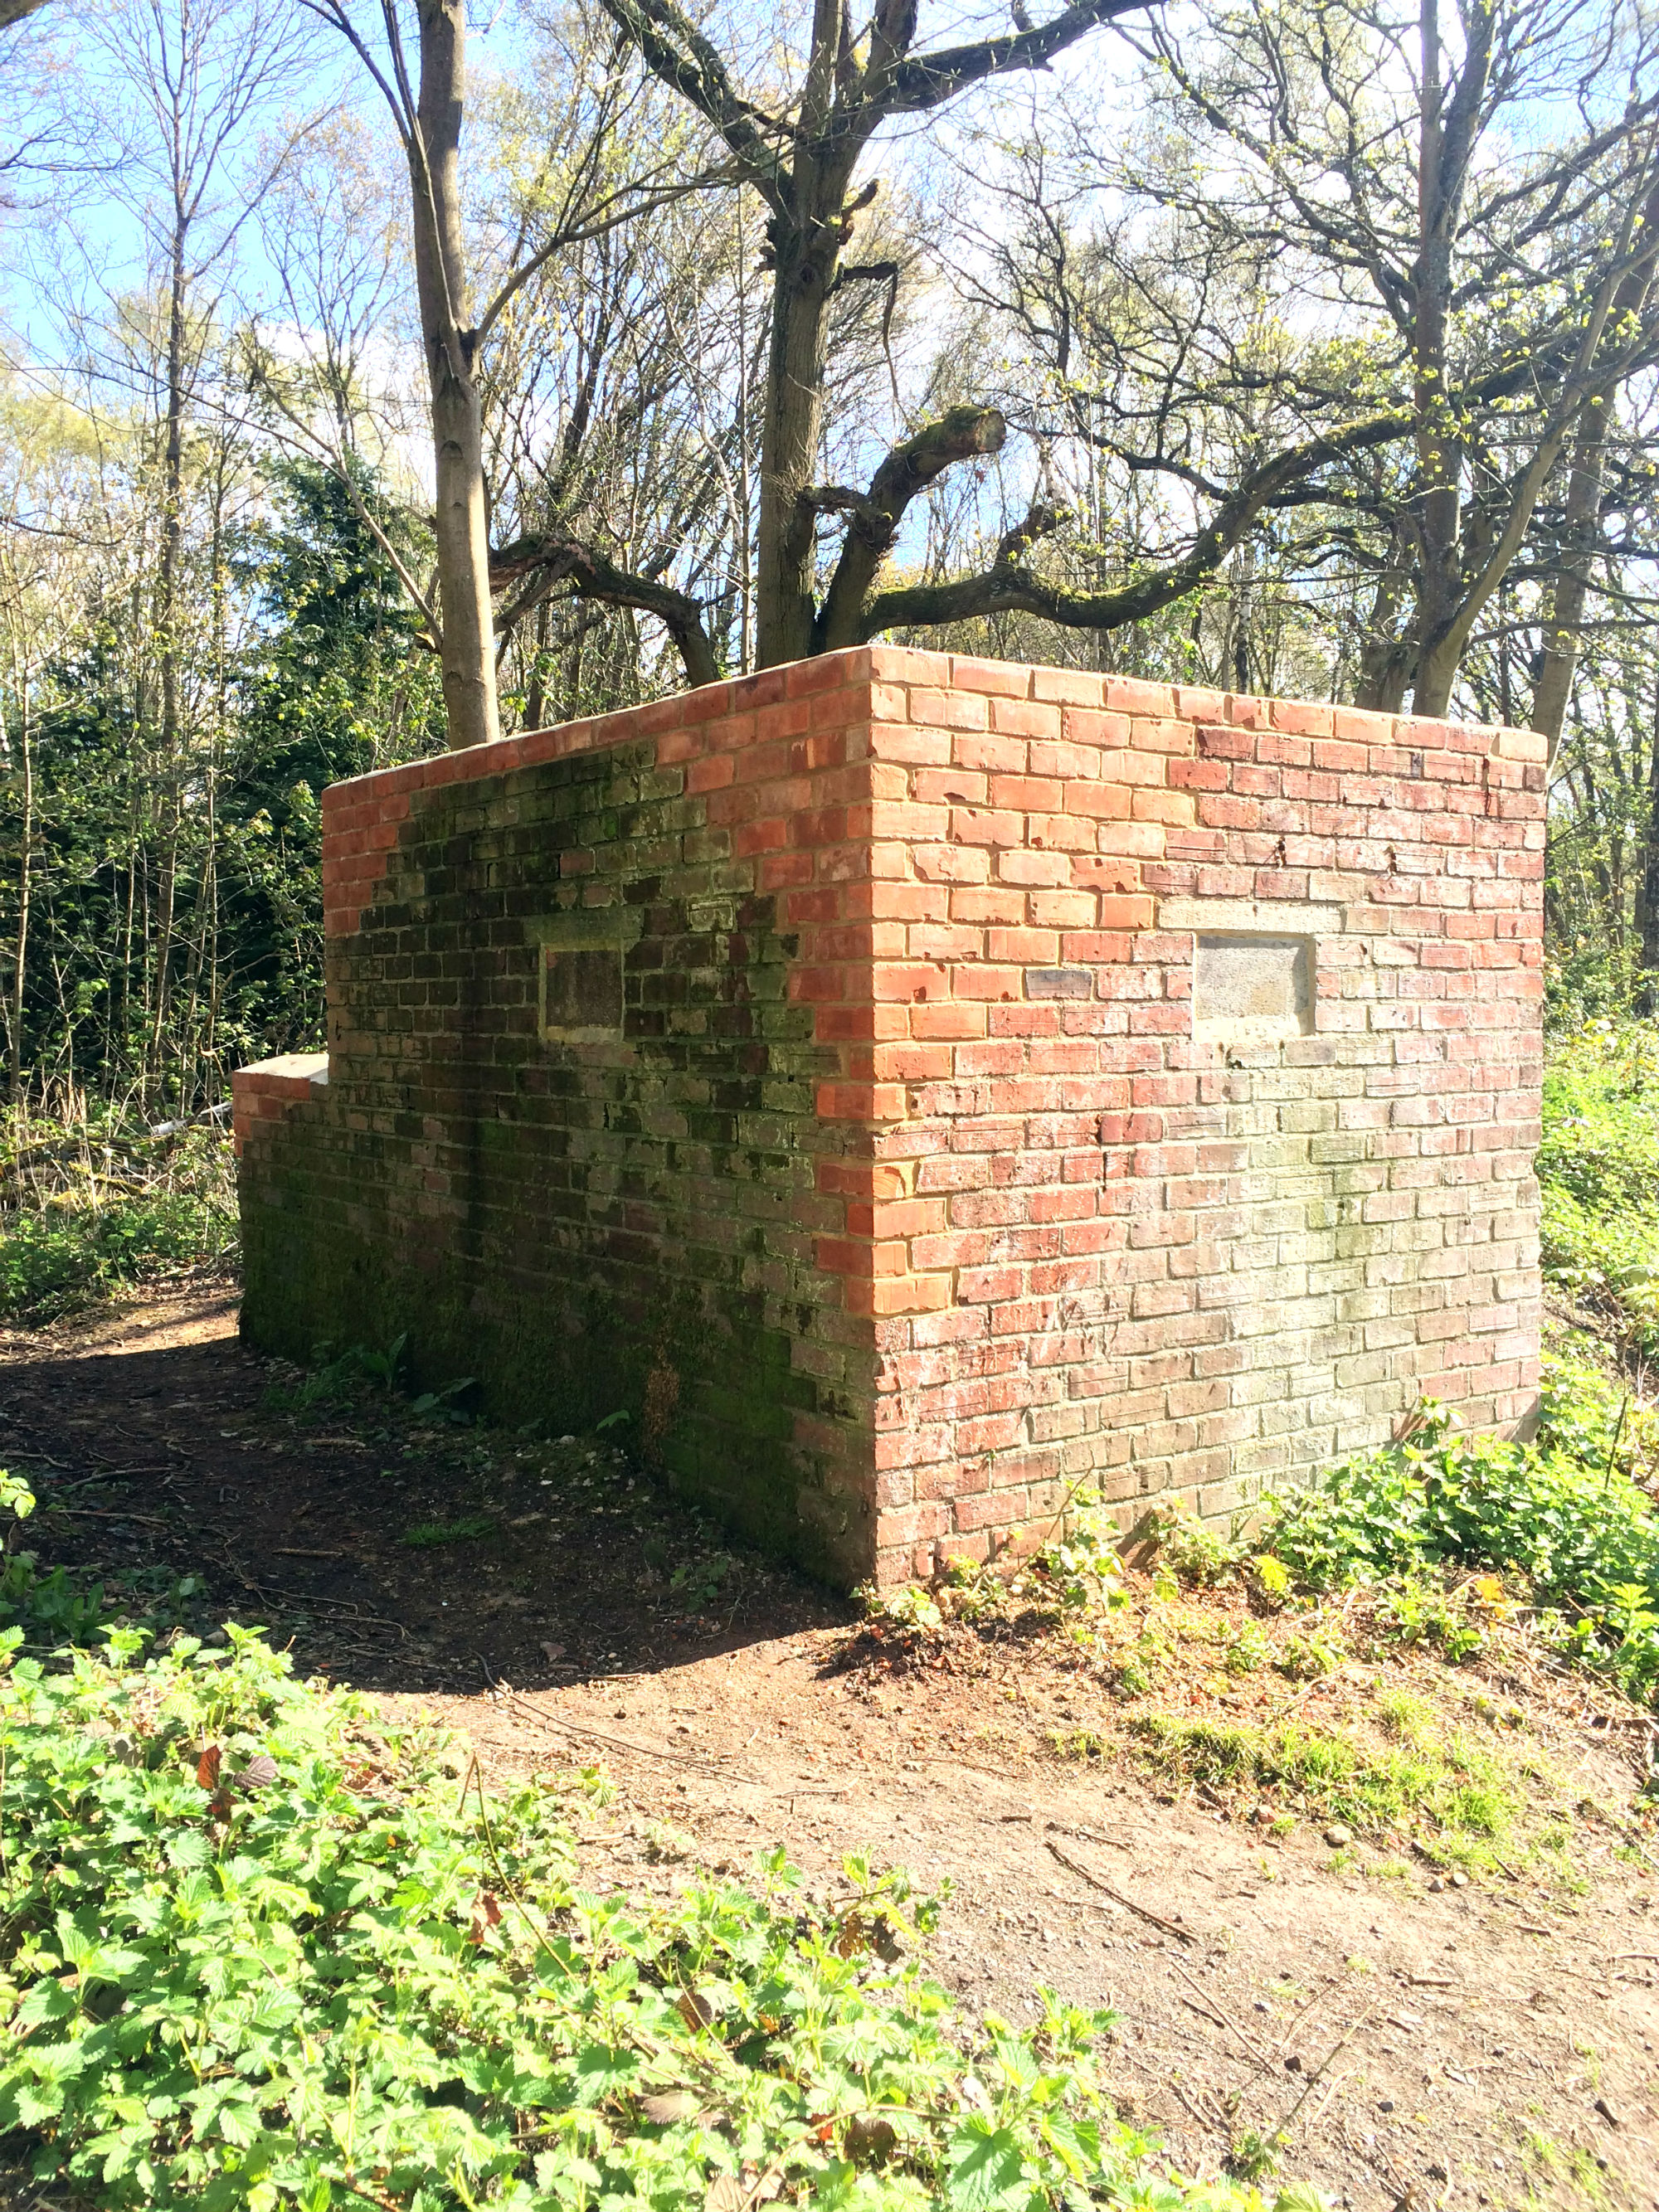 World War II Treasure Restored in Wellesley Woodlands - The Land Trust